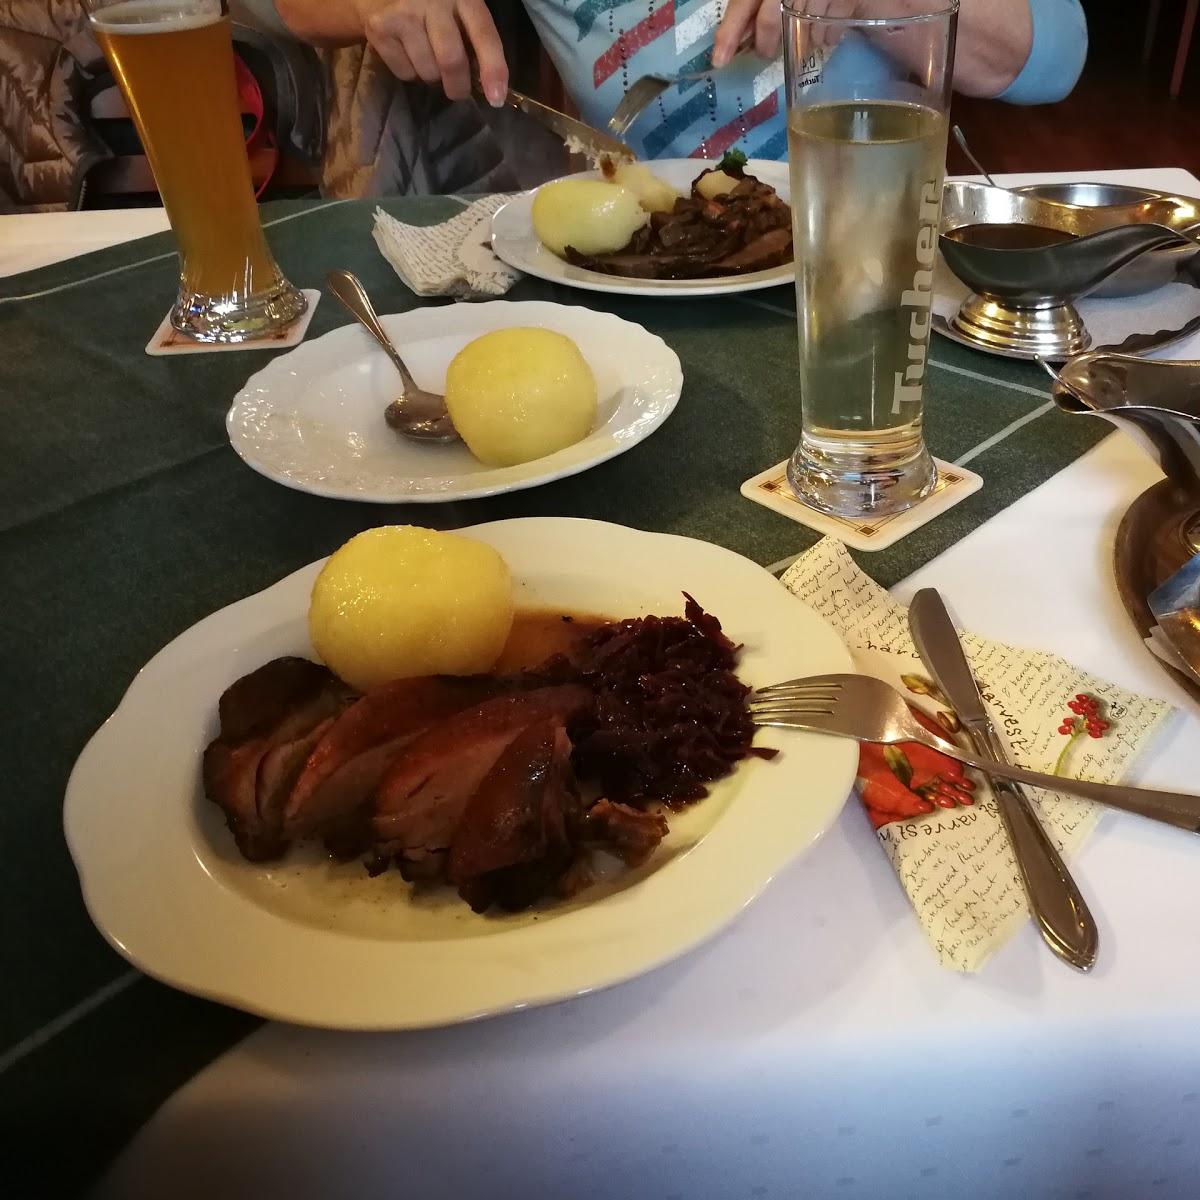 Restaurant "Zum heiteren Blick" in Selbitz